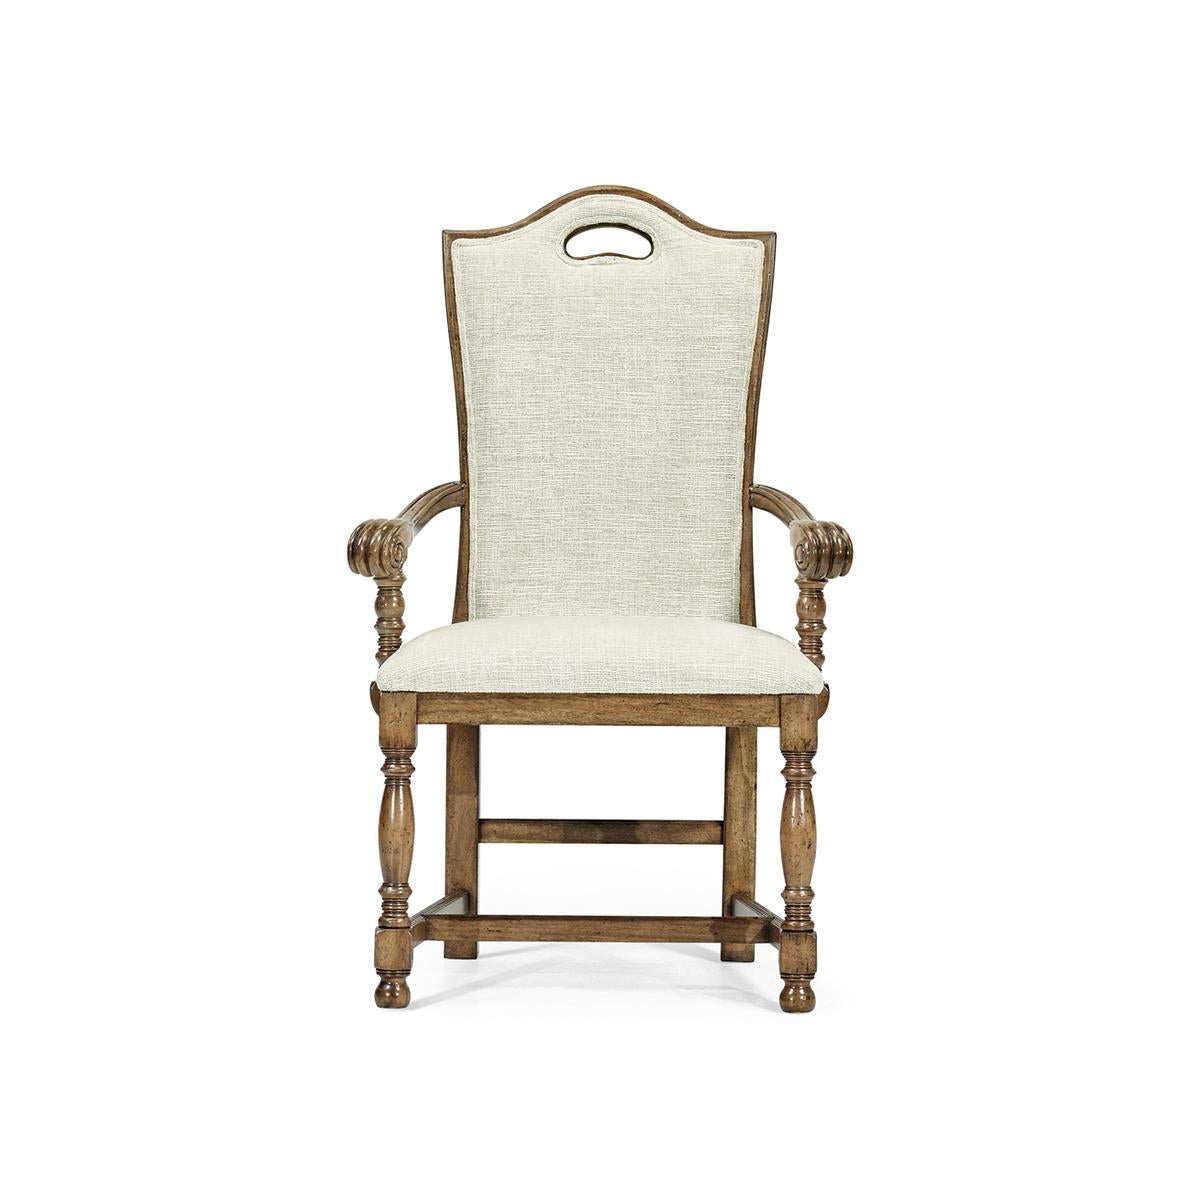 Le fauteuil à haut dossier William et Mary est un fauteuil élégant et confortable avec une finition bois flotté moyen, un haut dossier et un rembourrage en peluche. Il présente une rampe supérieure joliment incurvée avec une poignée percée et une